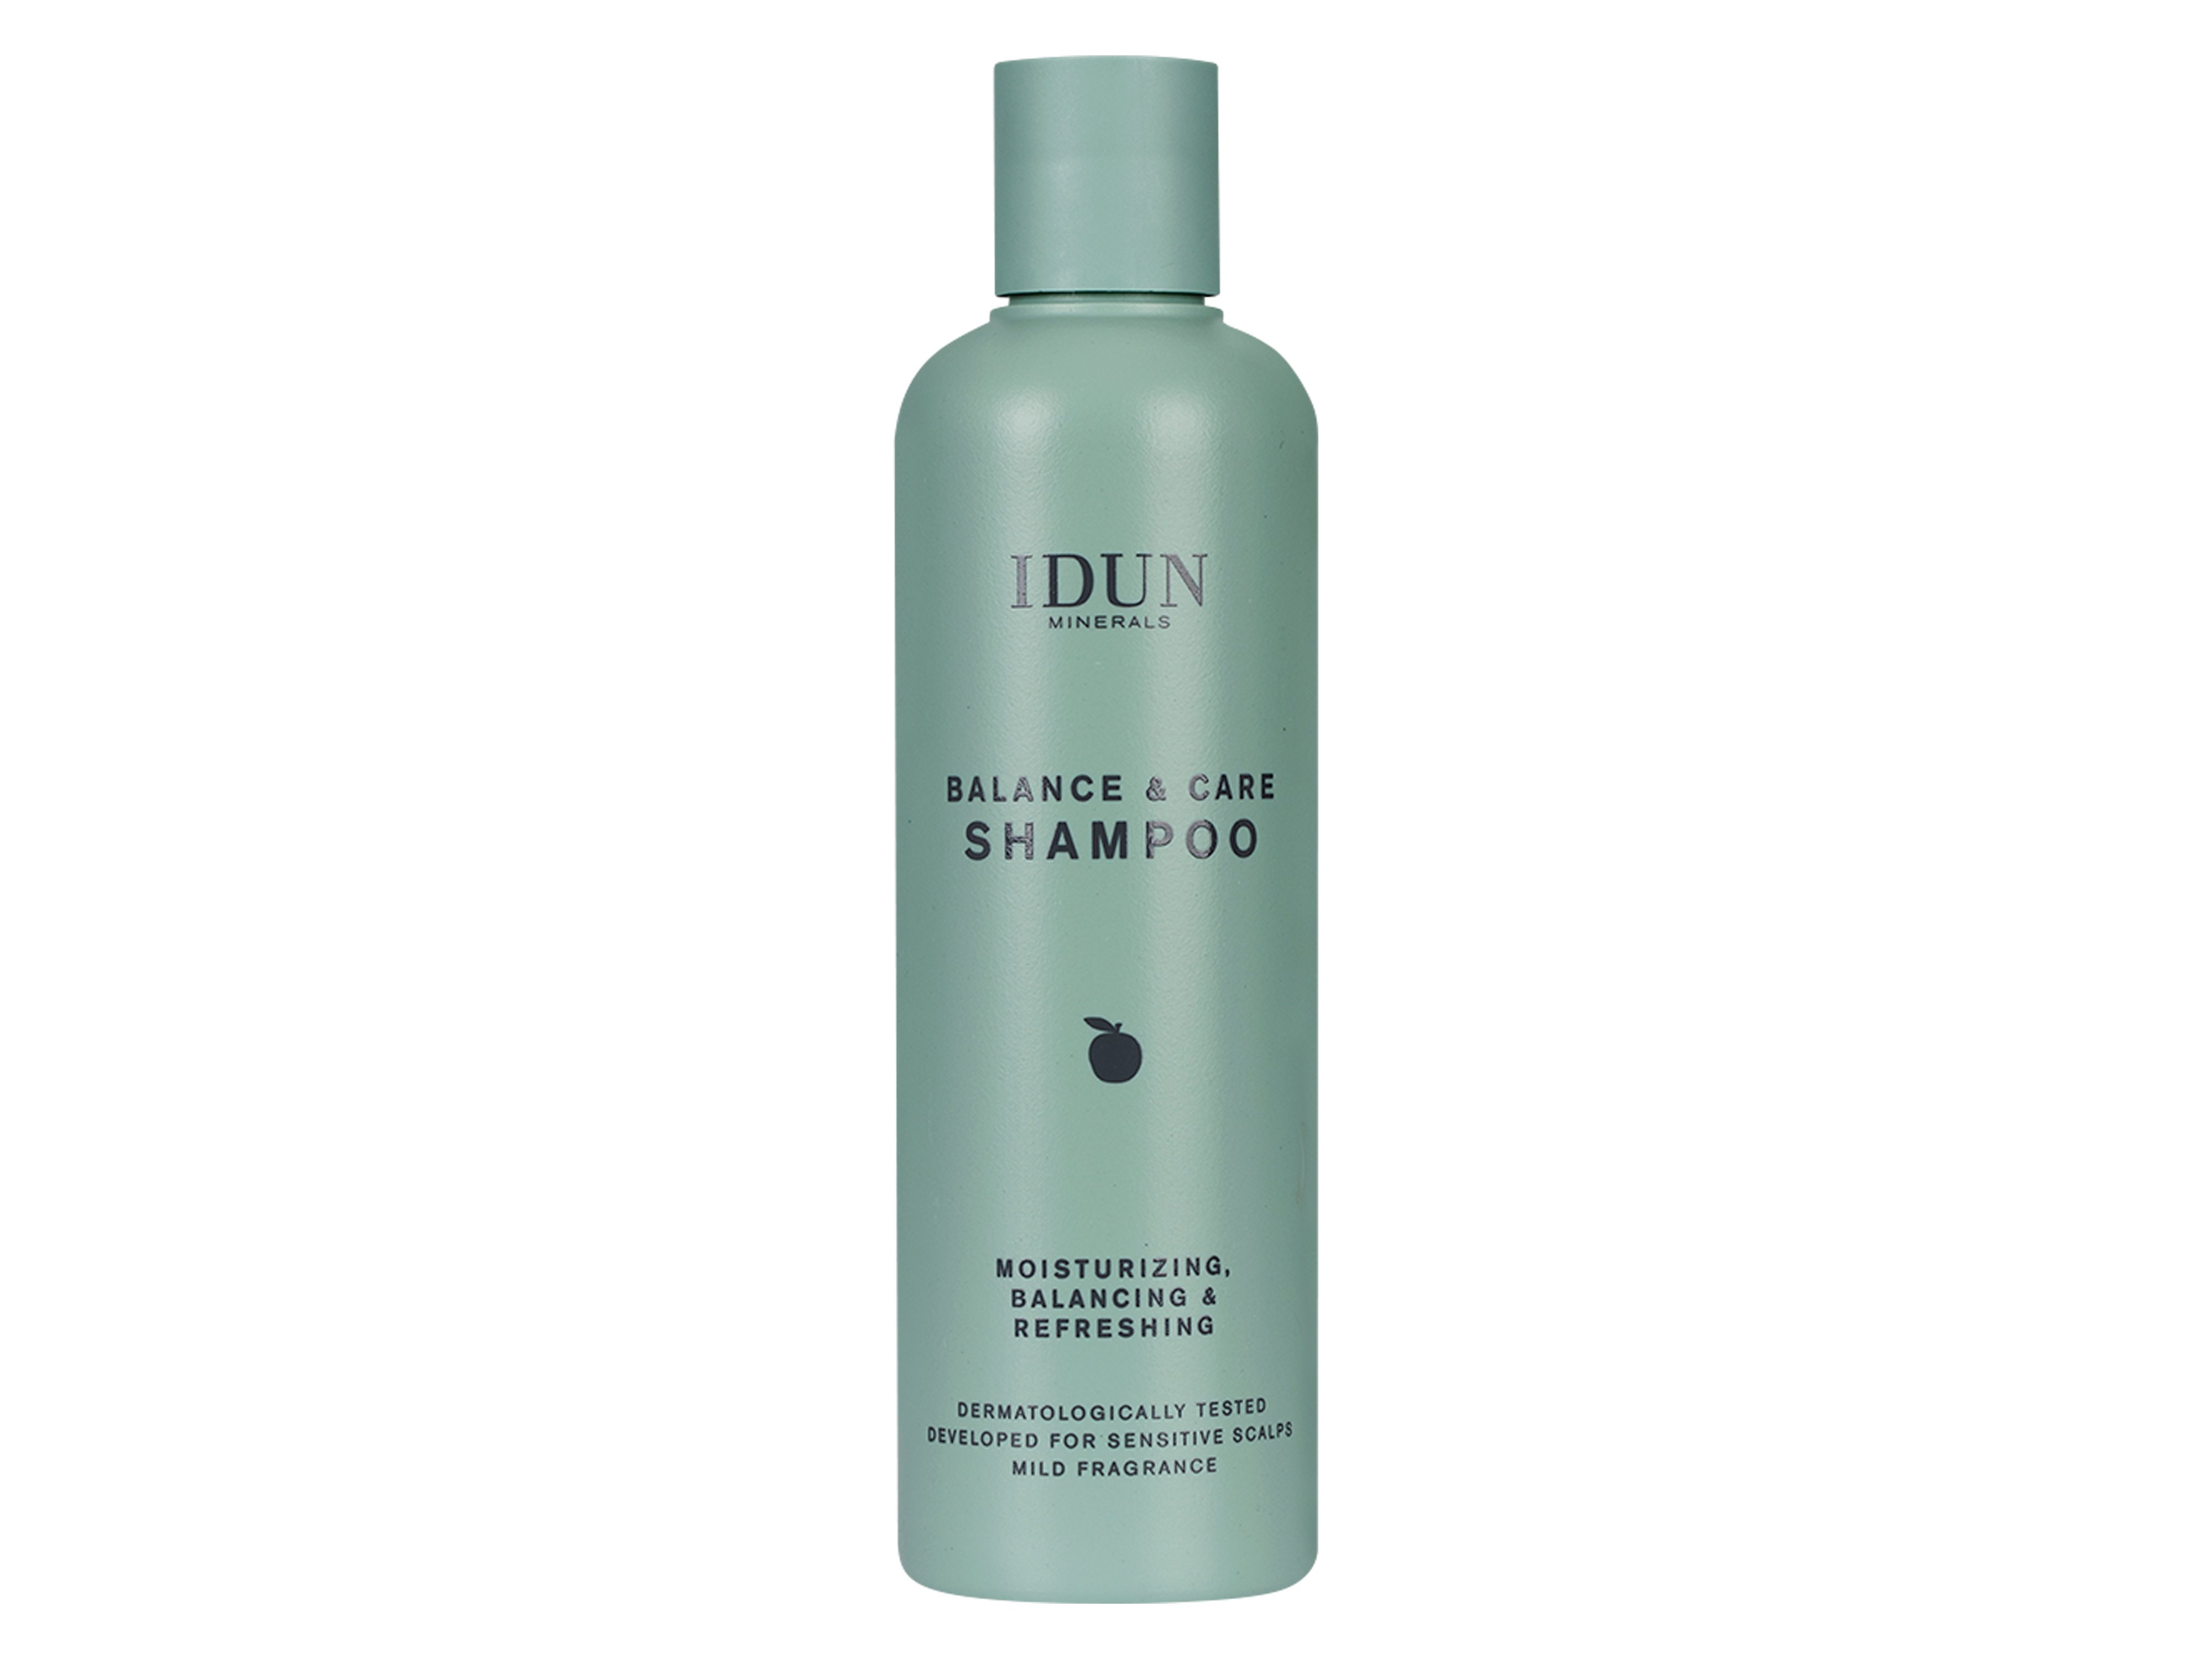 IDUN Minerals Balance & Care Shampoo, 250 ml